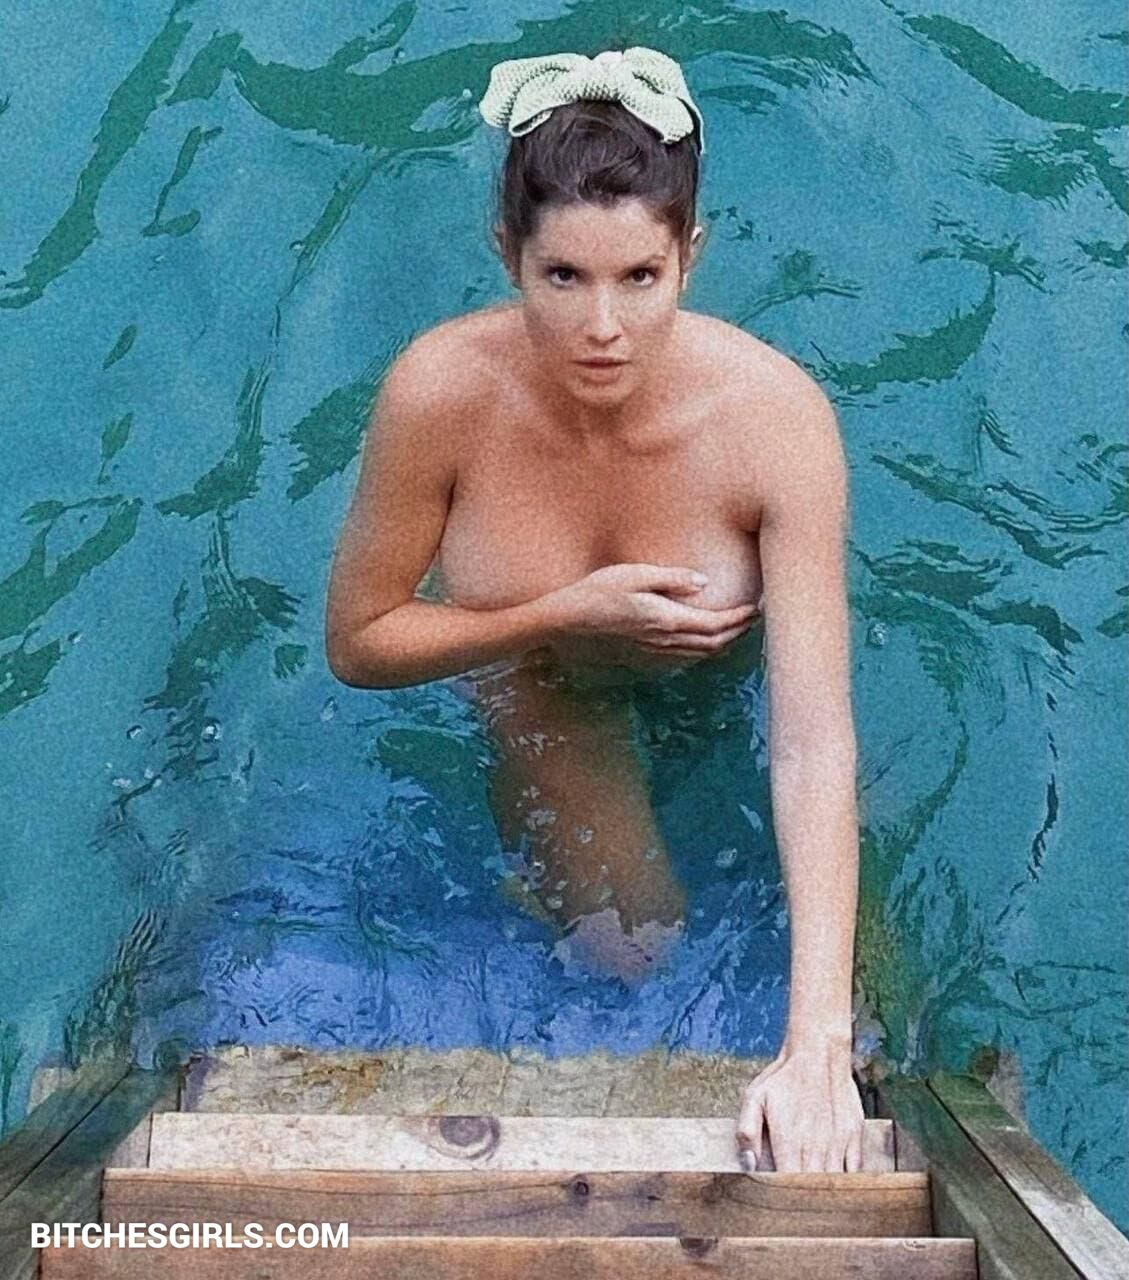 Amanda cerny leaked nude